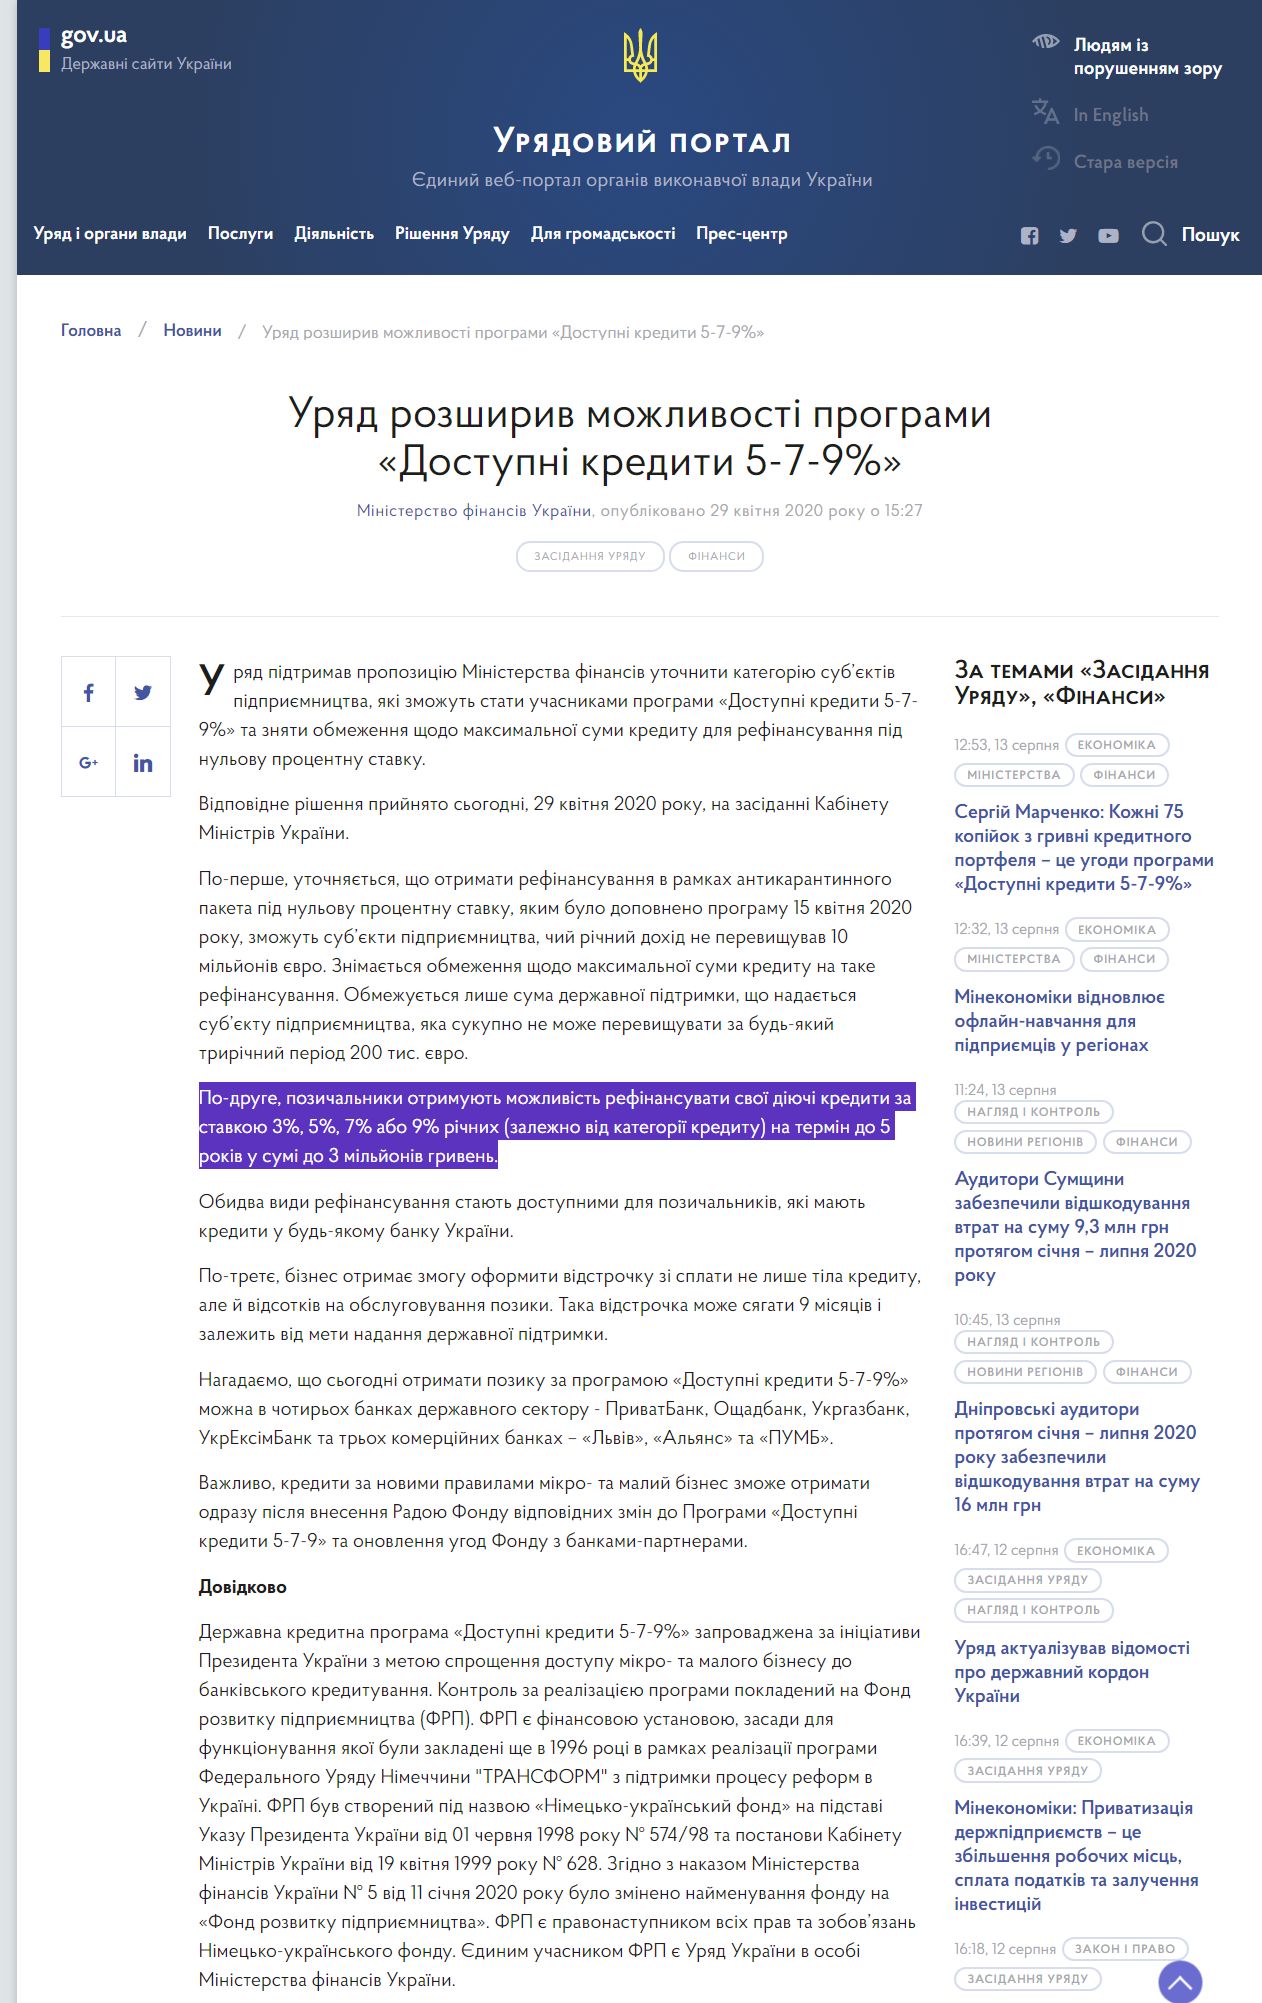 https://www.kmu.gov.ua/news/uryad-rozshiriv-mozhlivosti-programi-dostupni-krediti-5-7-9